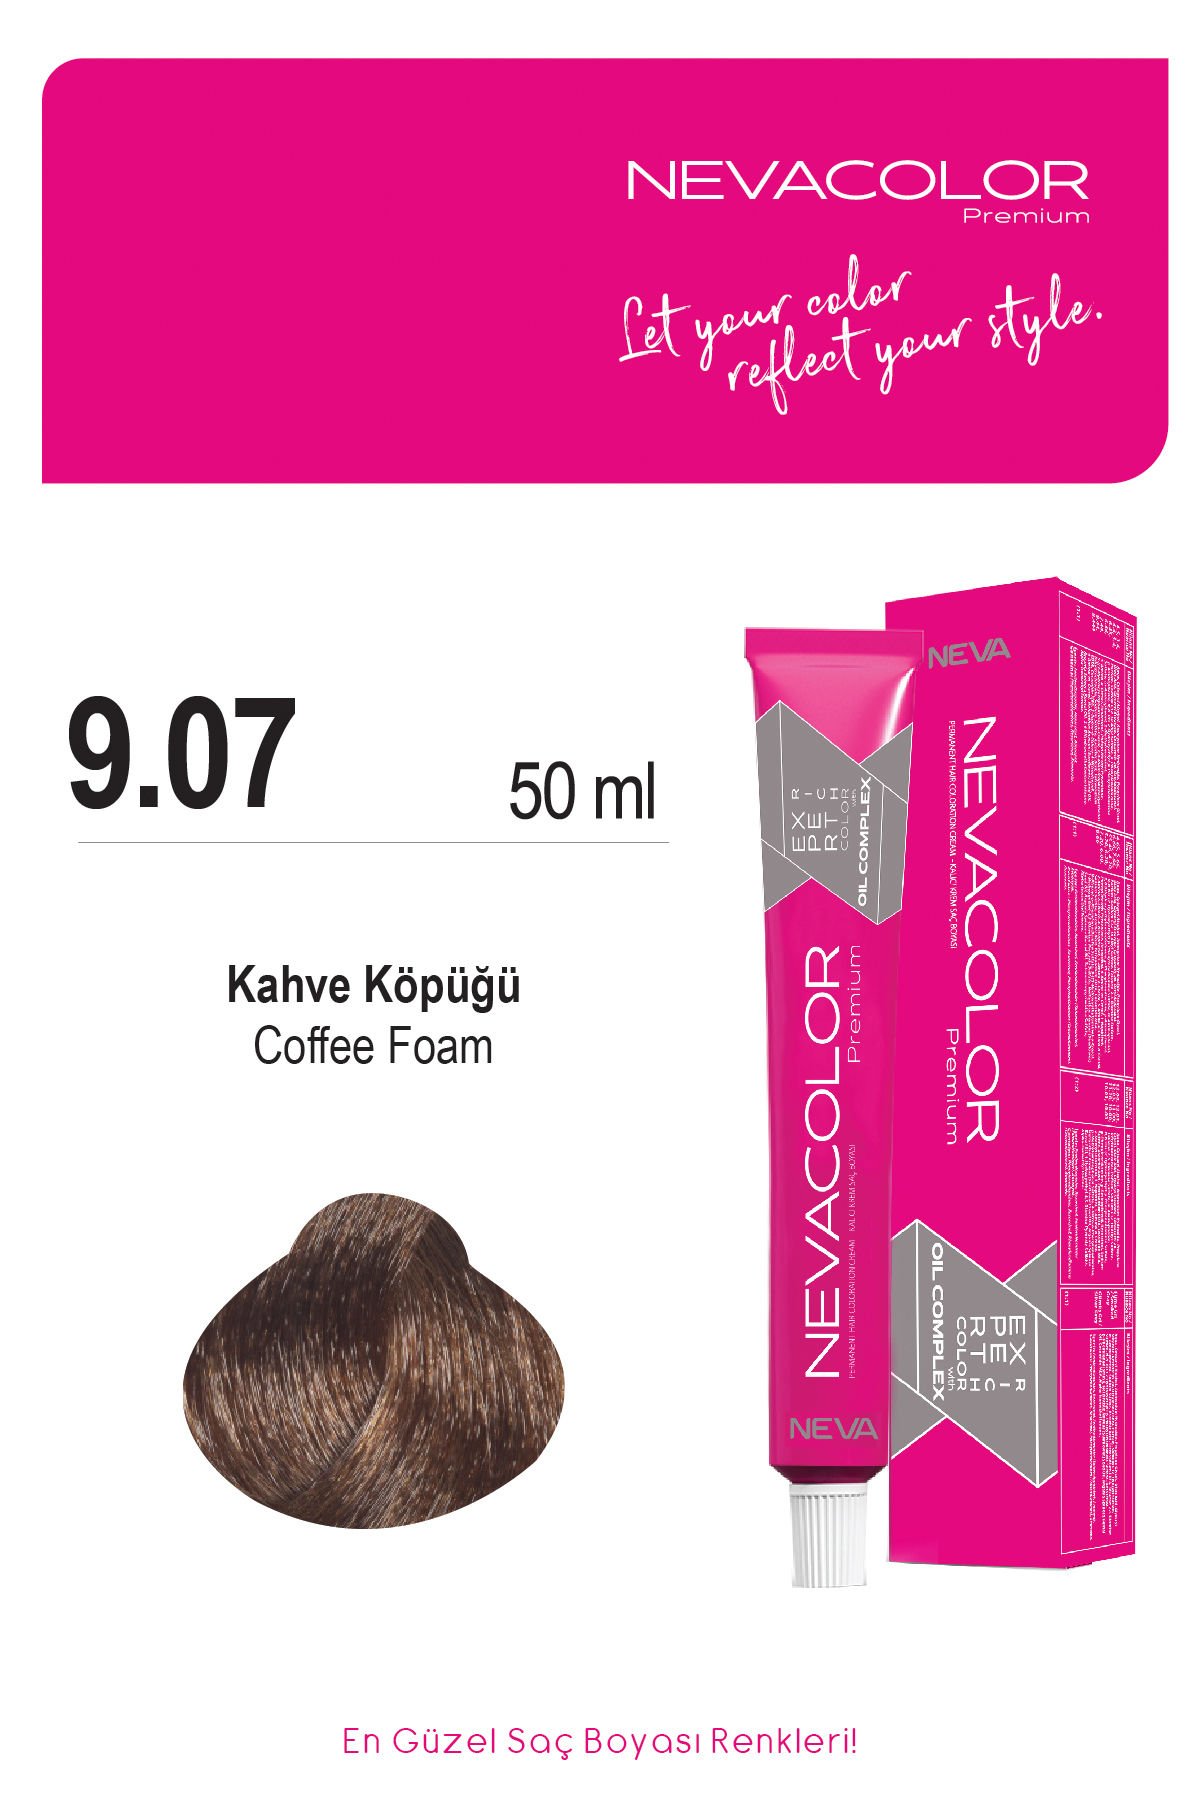 Nevacolor Premium 9.07 Kahve Köpüğü - Kalıcı Krem Saç Boyası 50 g Tüp